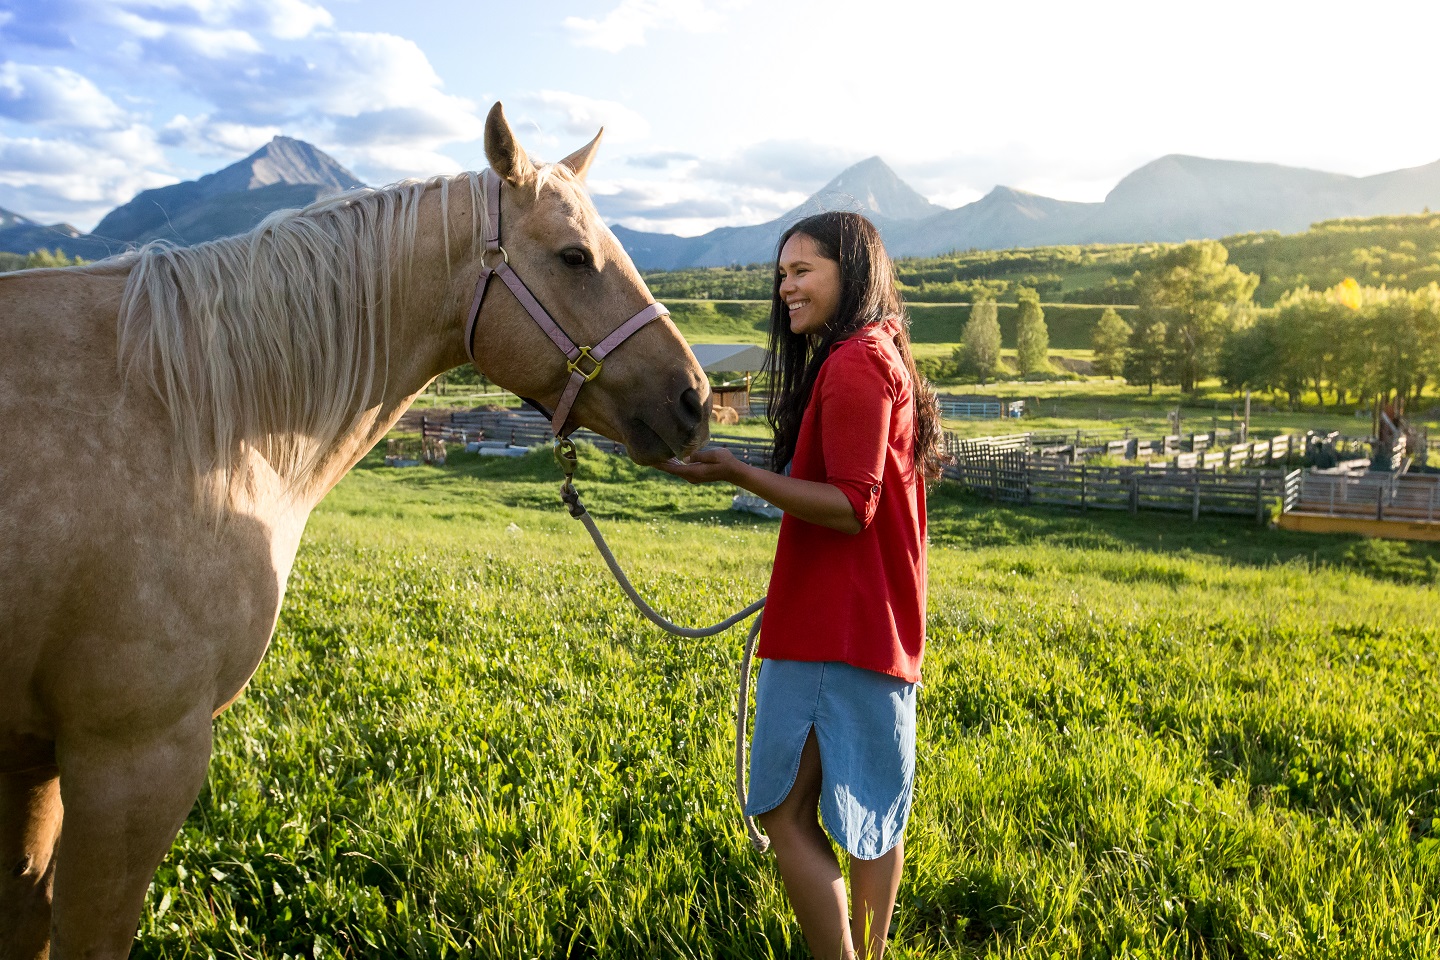 Une personne sourit et caresse un cheval. Il y a un ranch et des montagnes à l’arrière-plan.